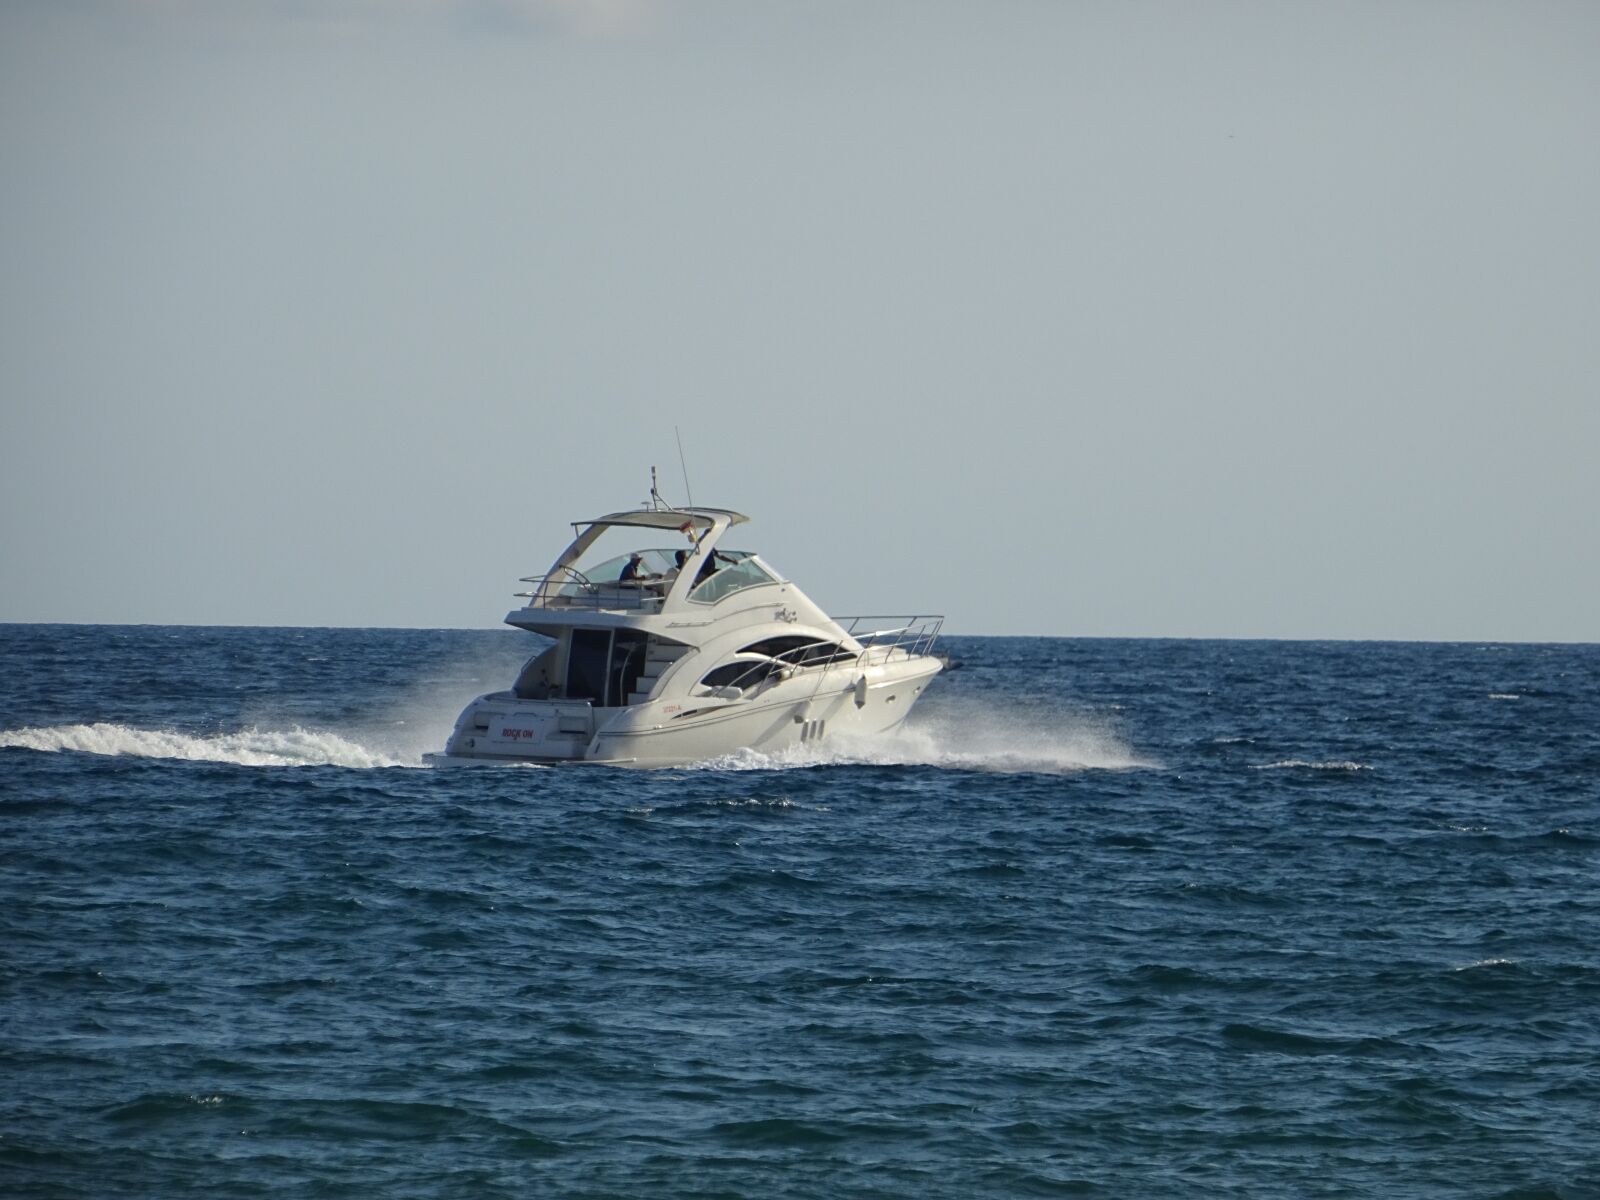 Sony DSC-HX60V sample photo. Yacht, sea, navigation photography